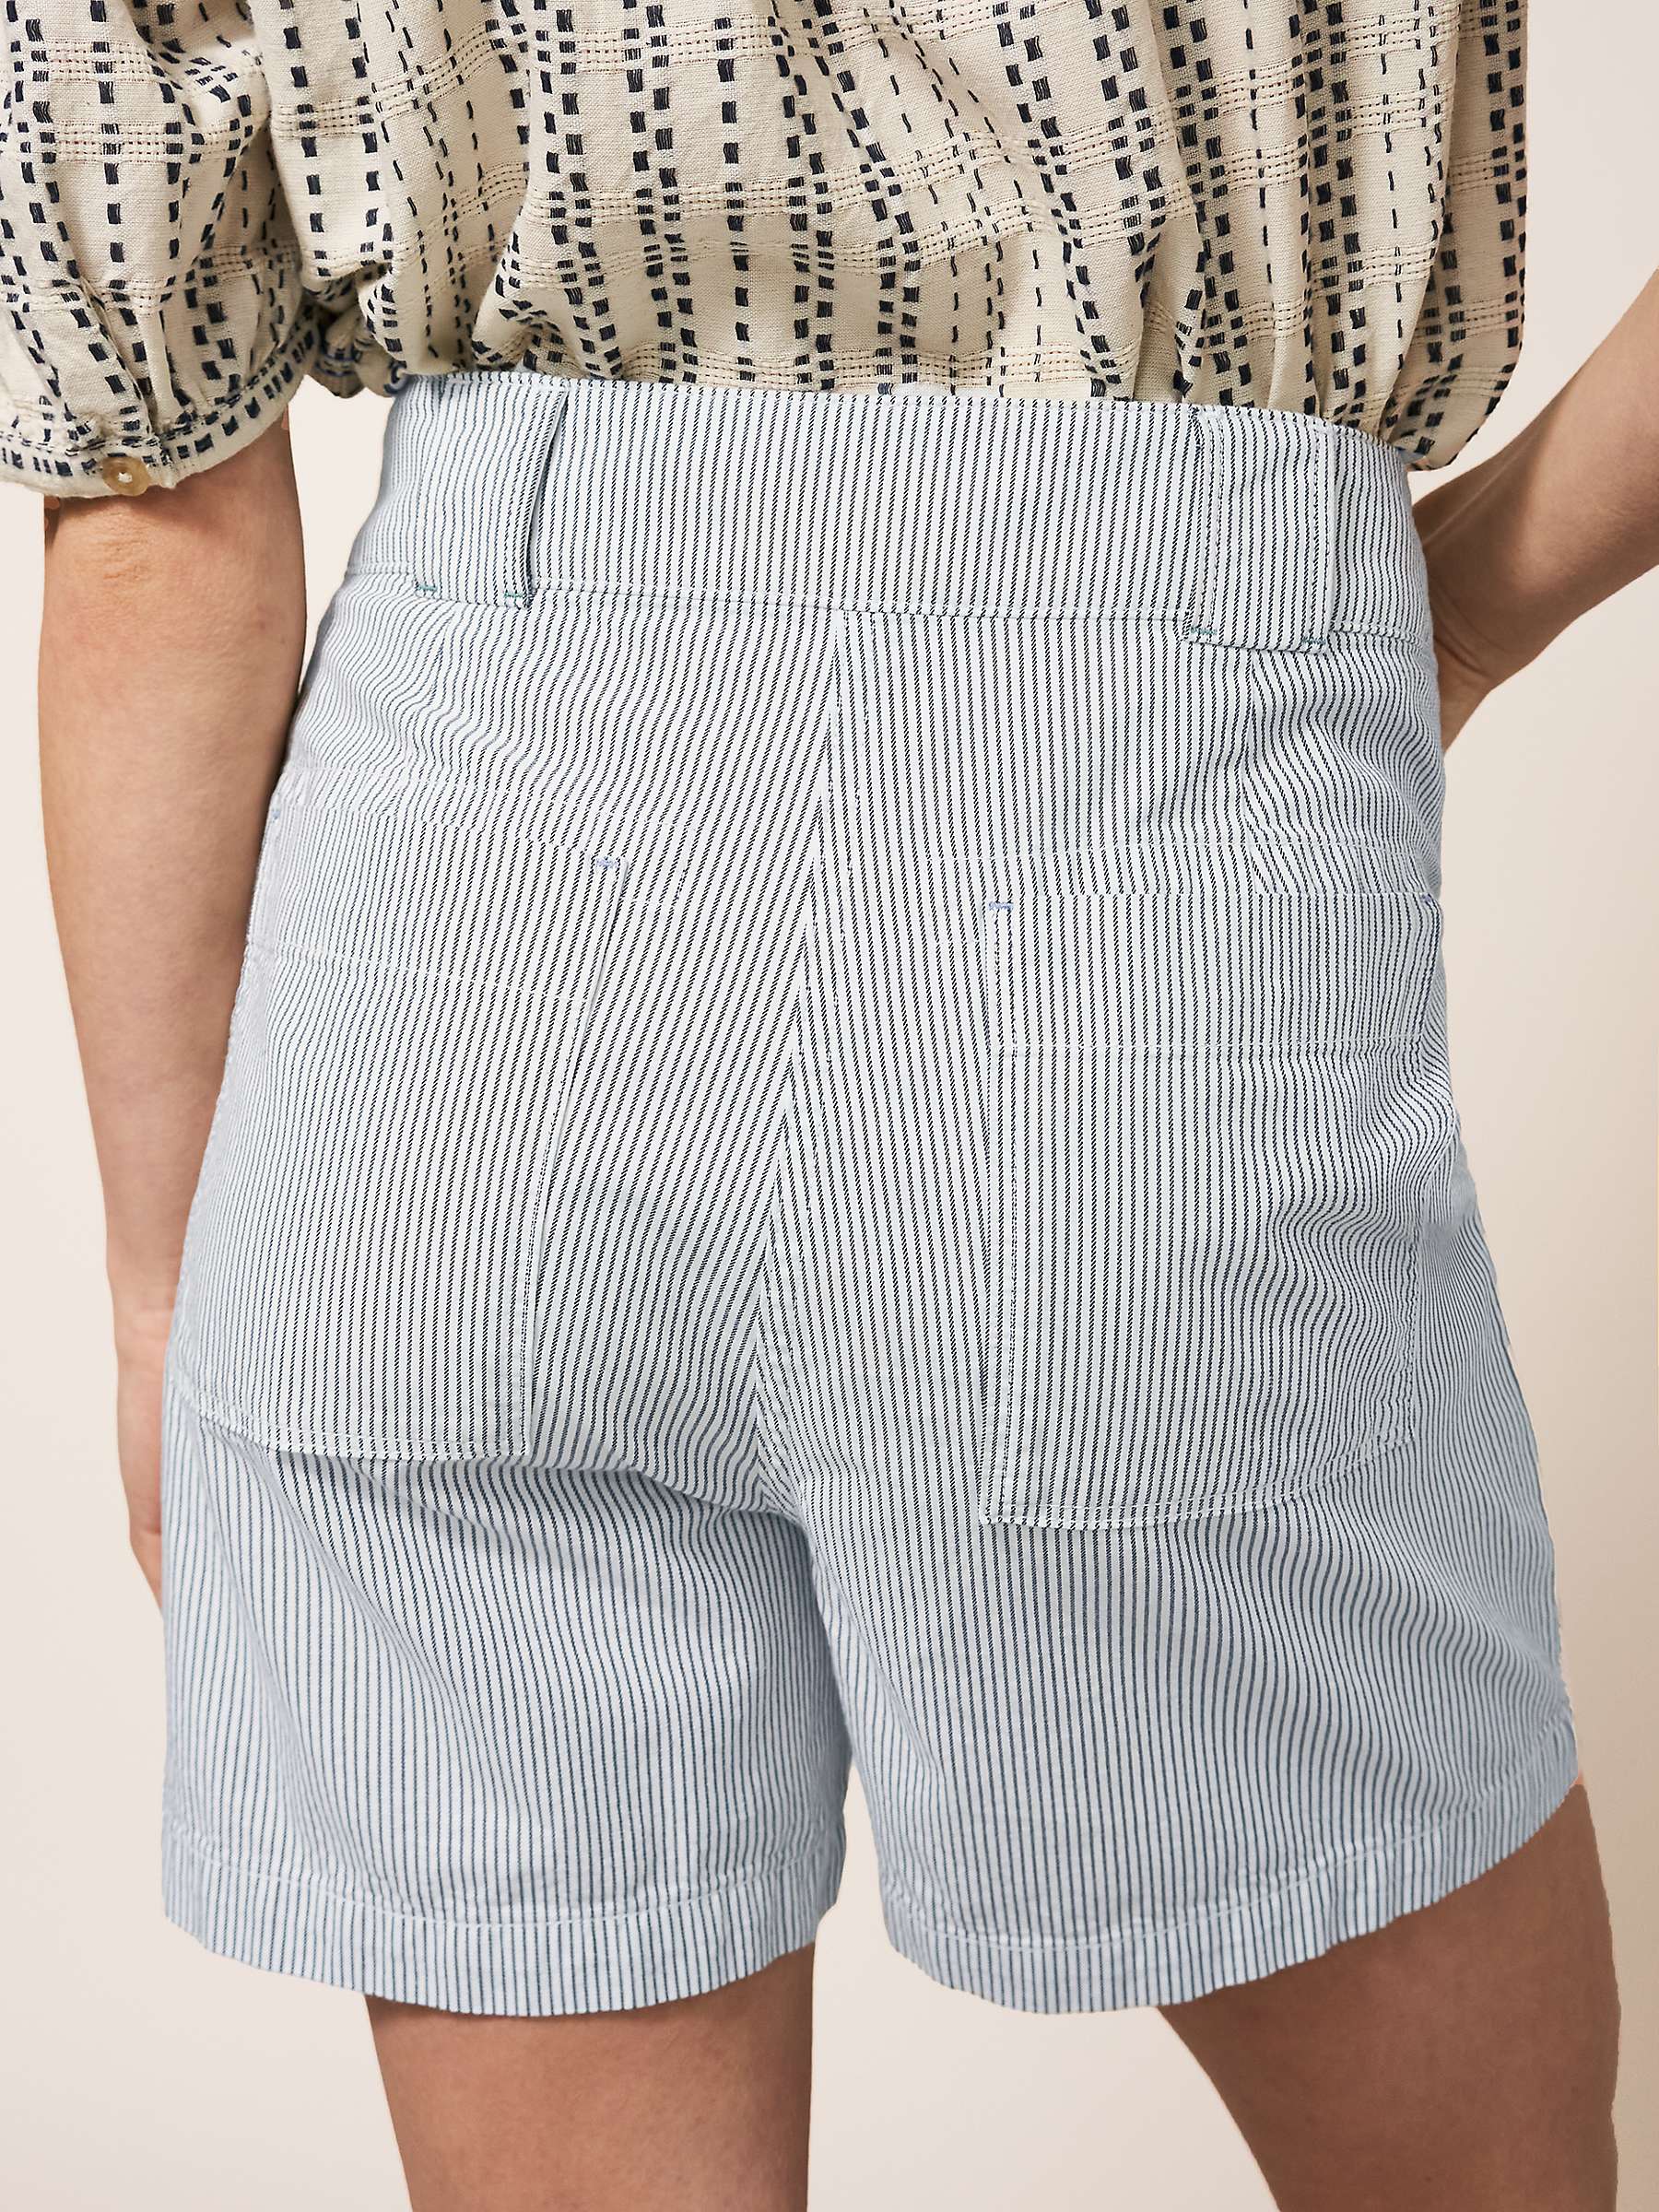 Buy White Stuff Tessa Chino Shorts Online at johnlewis.com